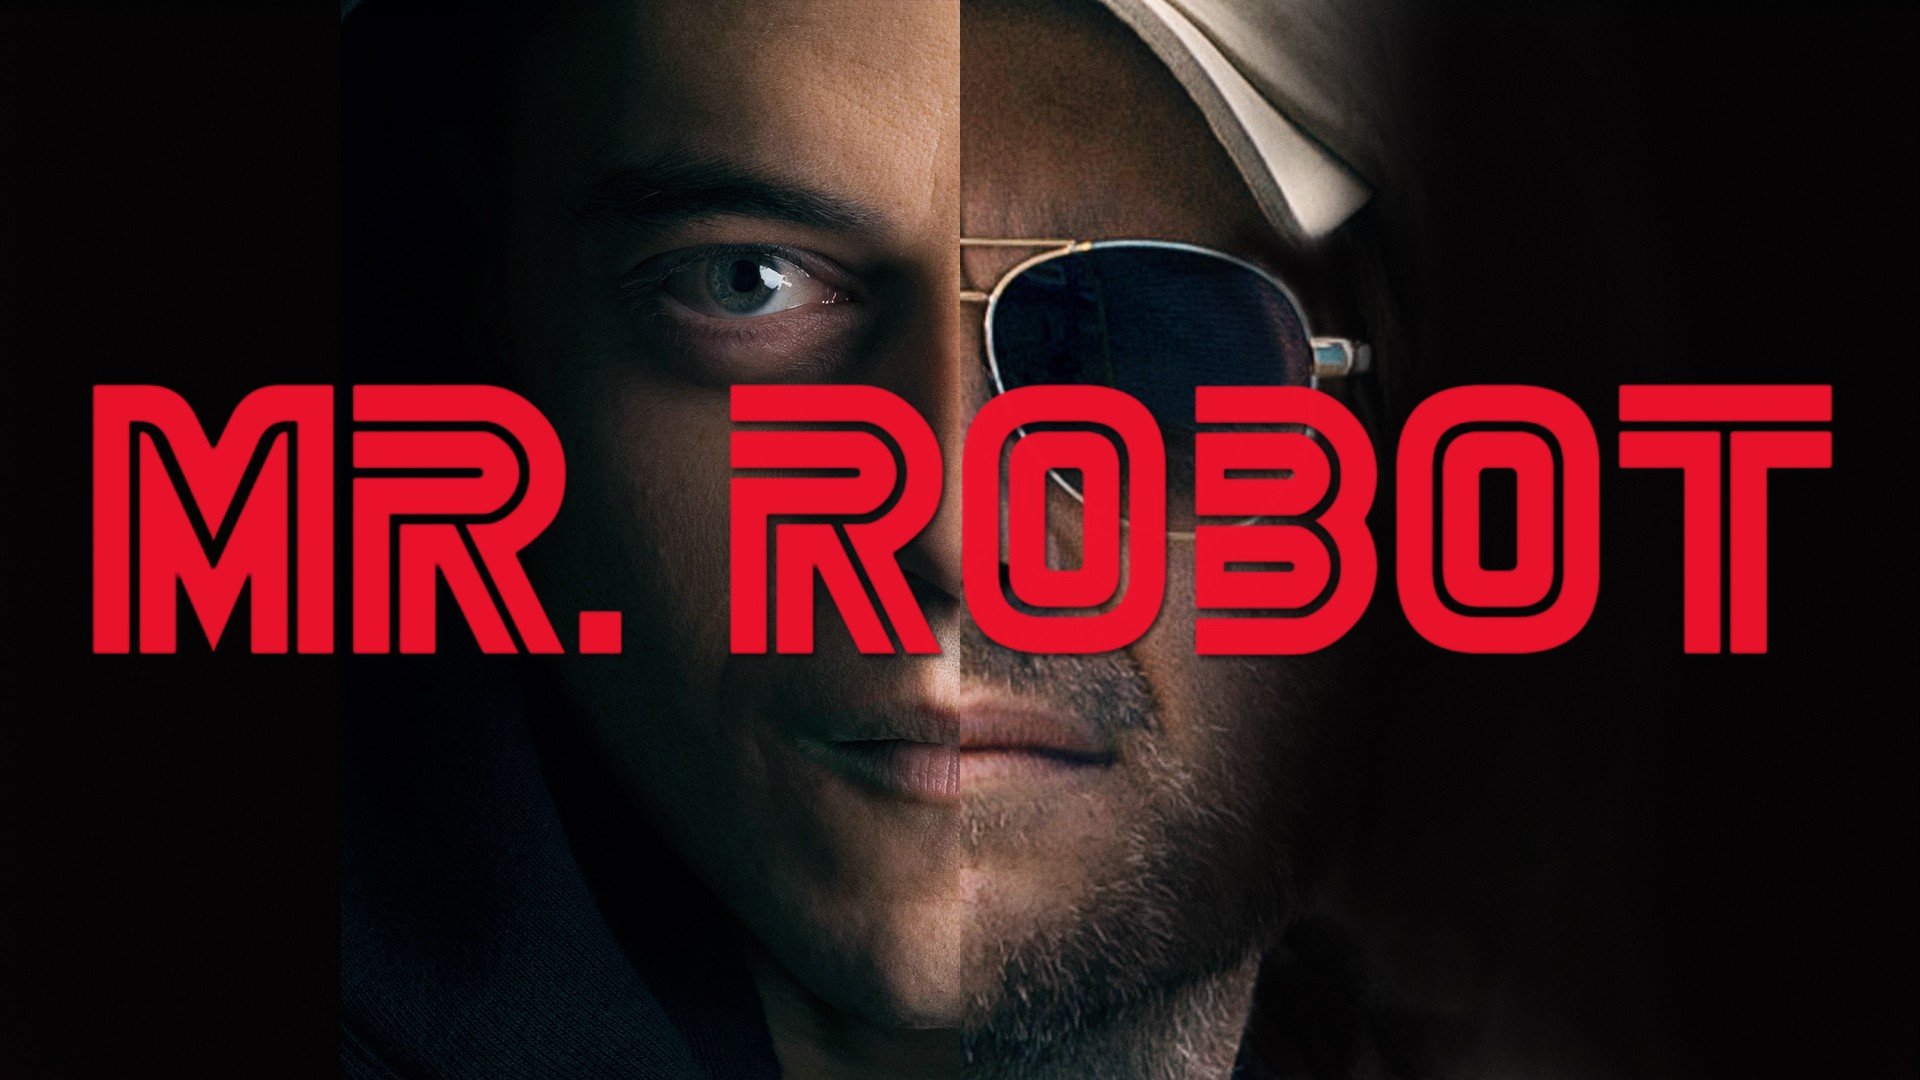 Mr. Robot (TV Series), Hacking Wallpaper